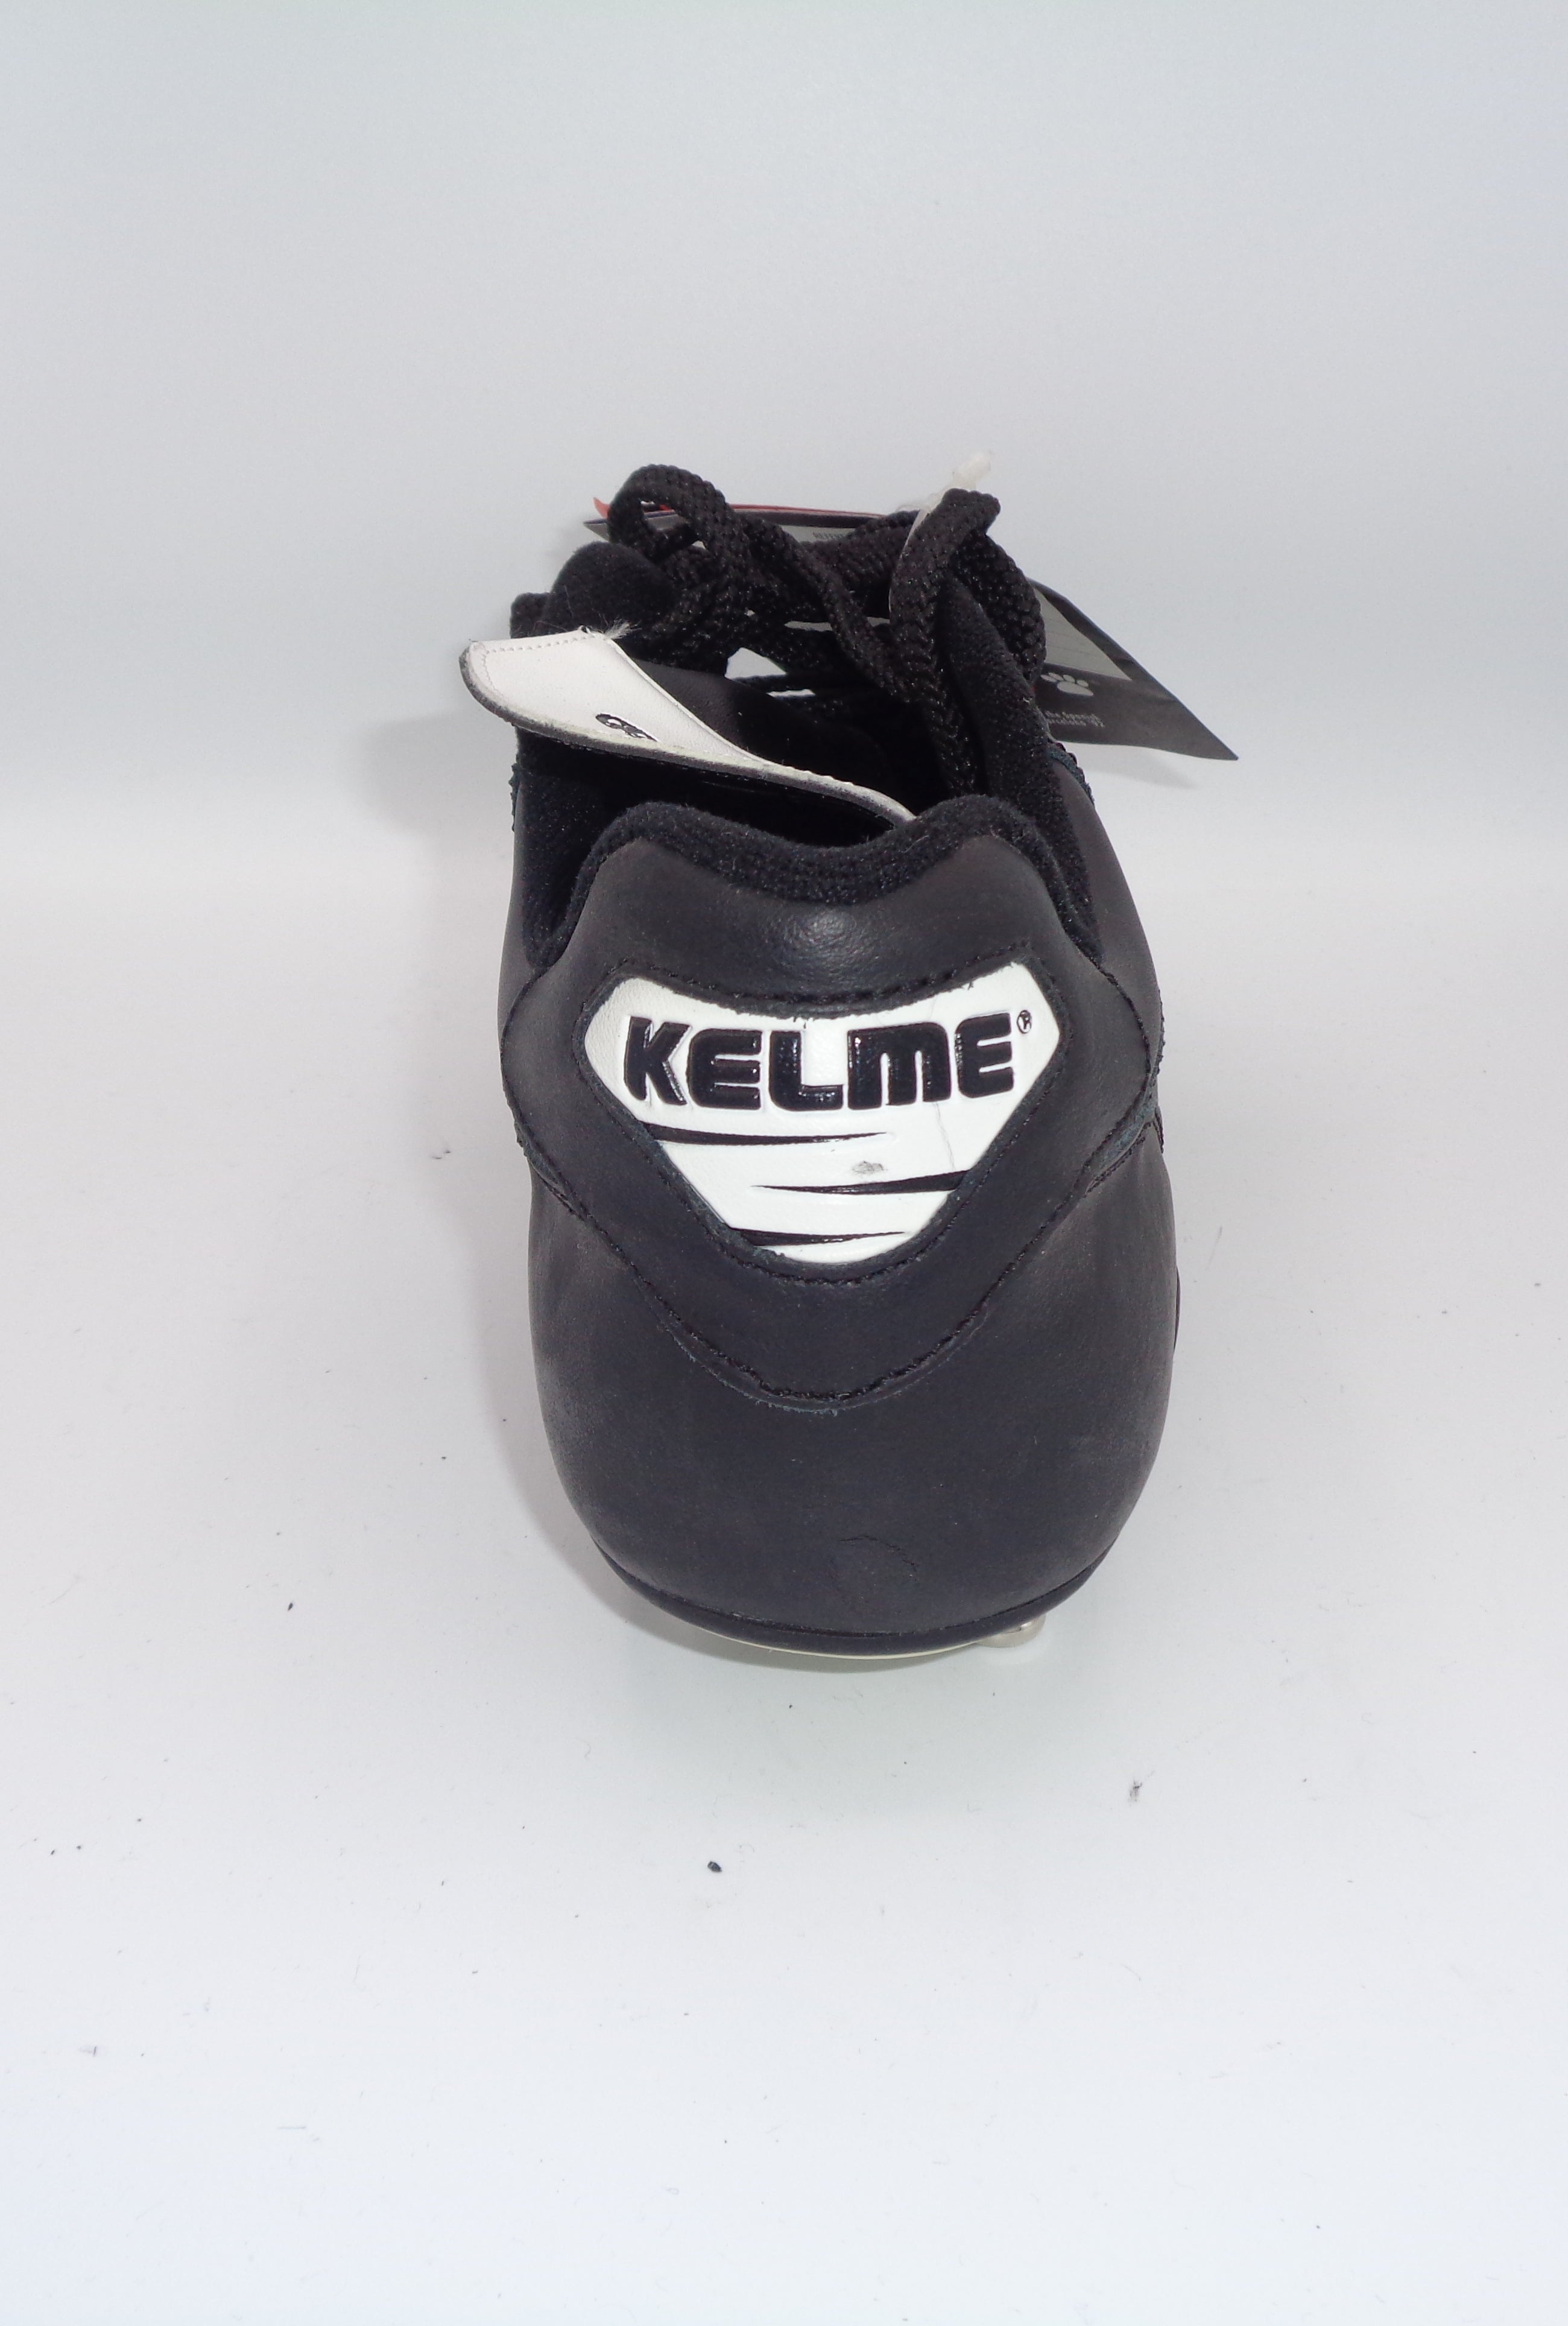 KELME 1994 ZUBITEC FOOTBALL BOOTS - KELME - SIZE 7.5